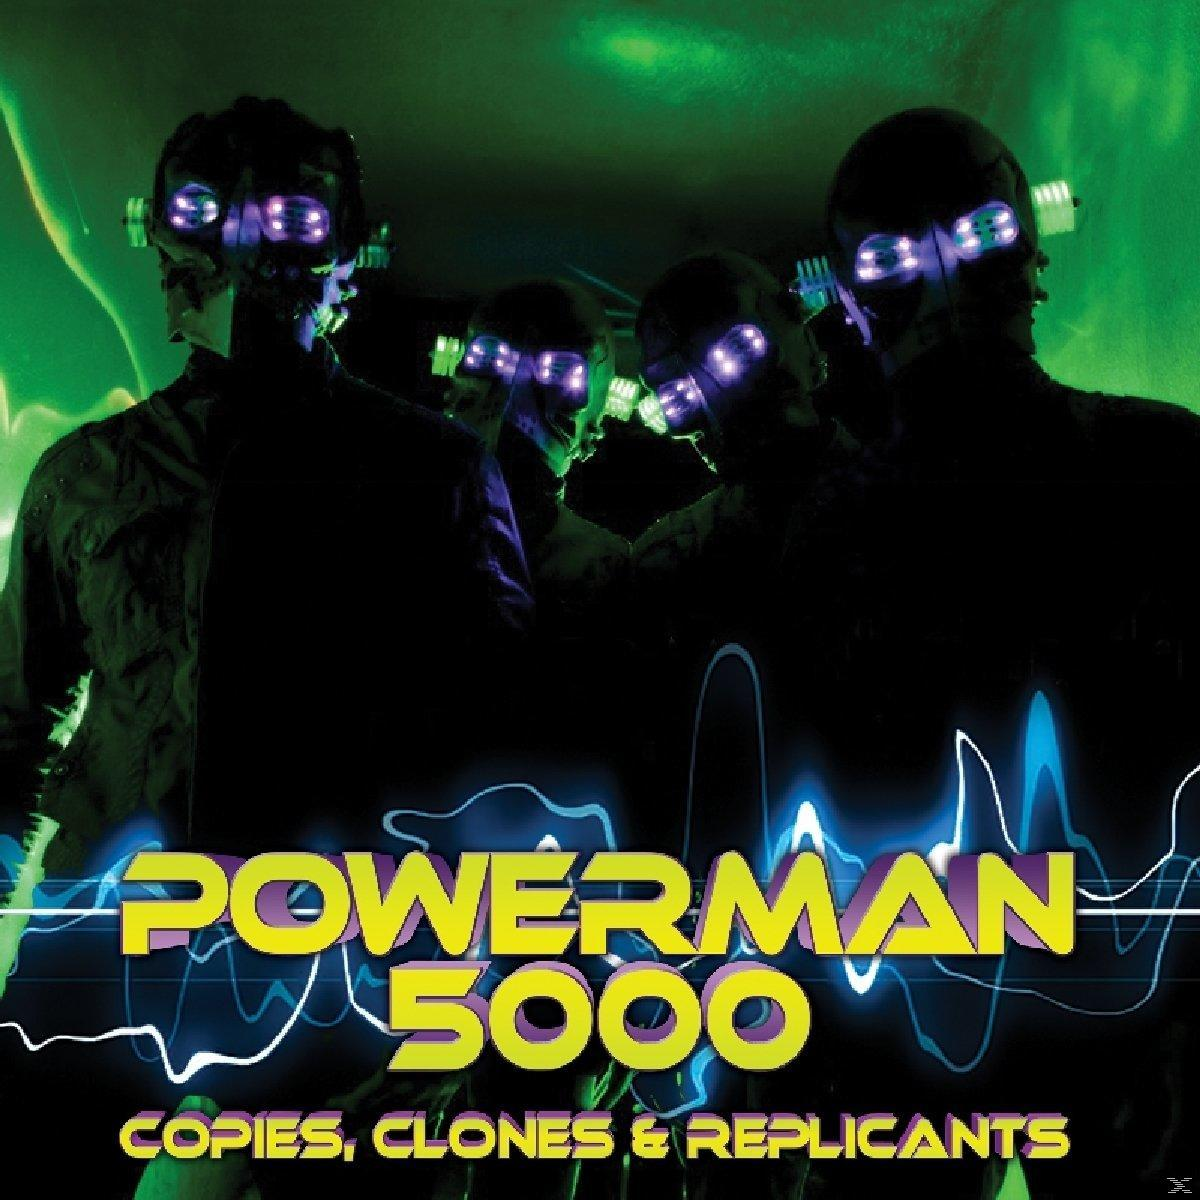 & Powerman 5000 REPLICANTS COPIES (Vinyl) - - CLONES